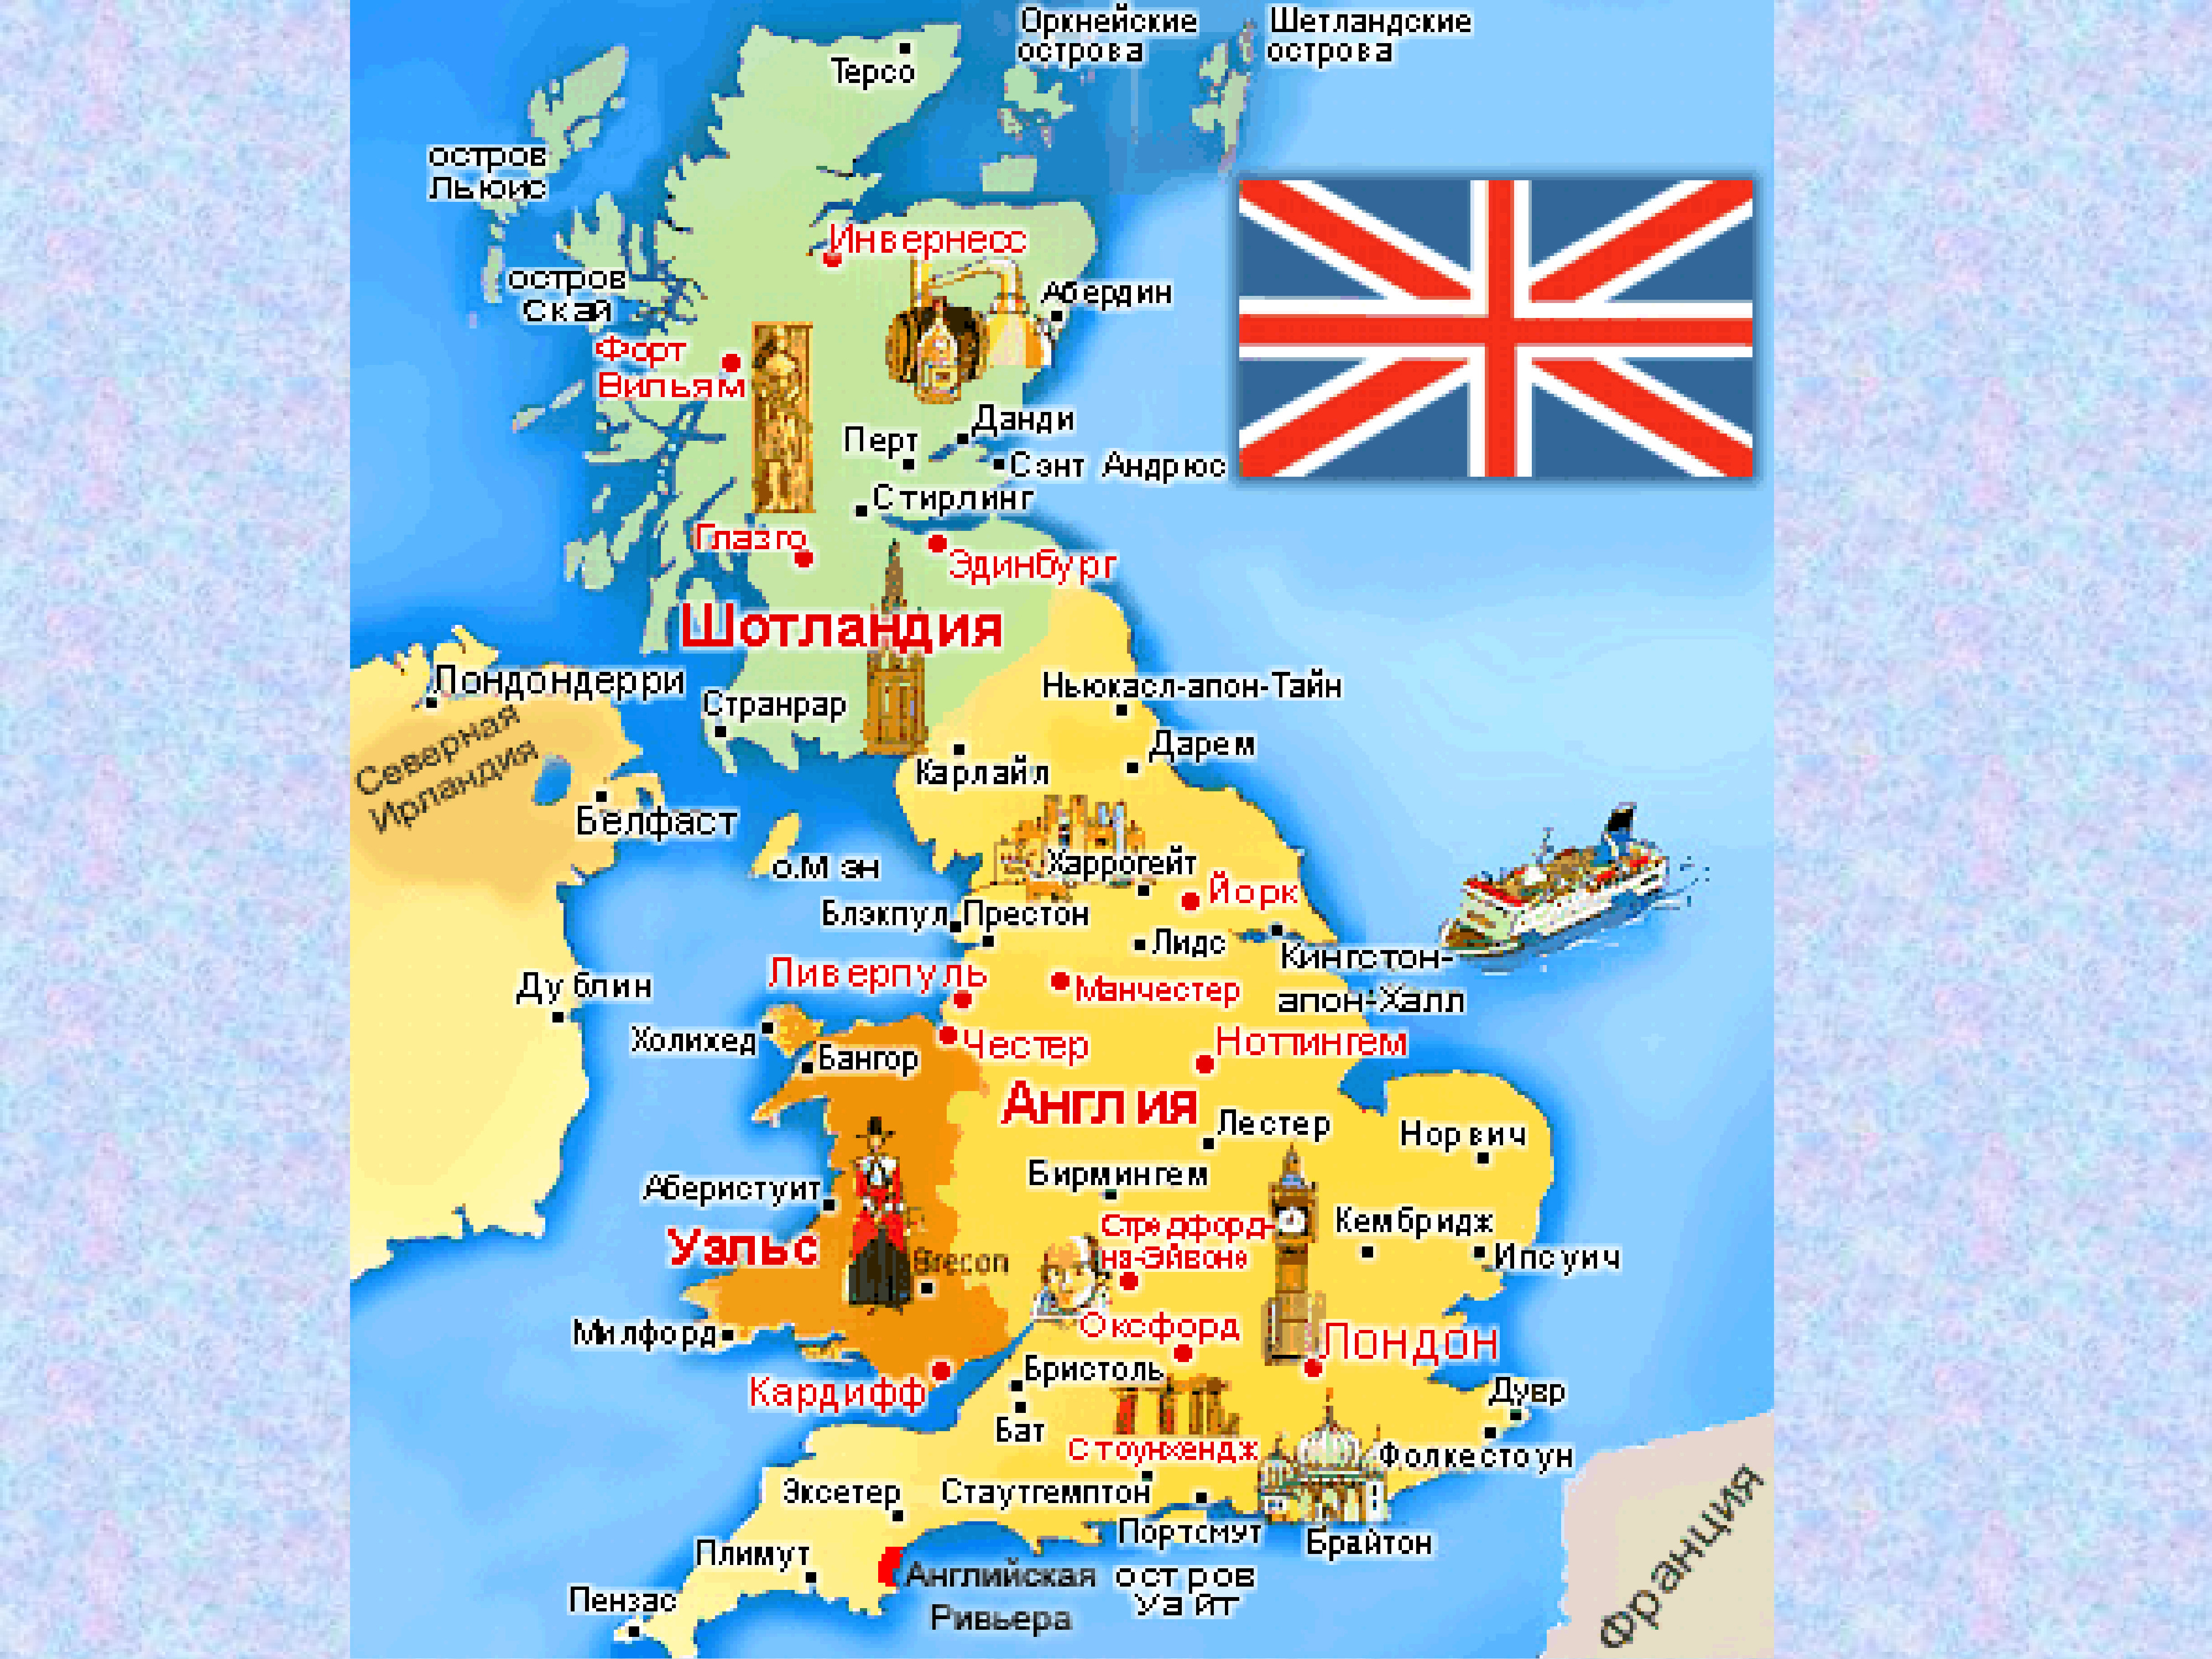 Uk что за страна. Великобритания 4 королевства карта. Географическое положение Англии карта. Великобретаниягеографическое положение. Географическая позиция Великобритании карта.